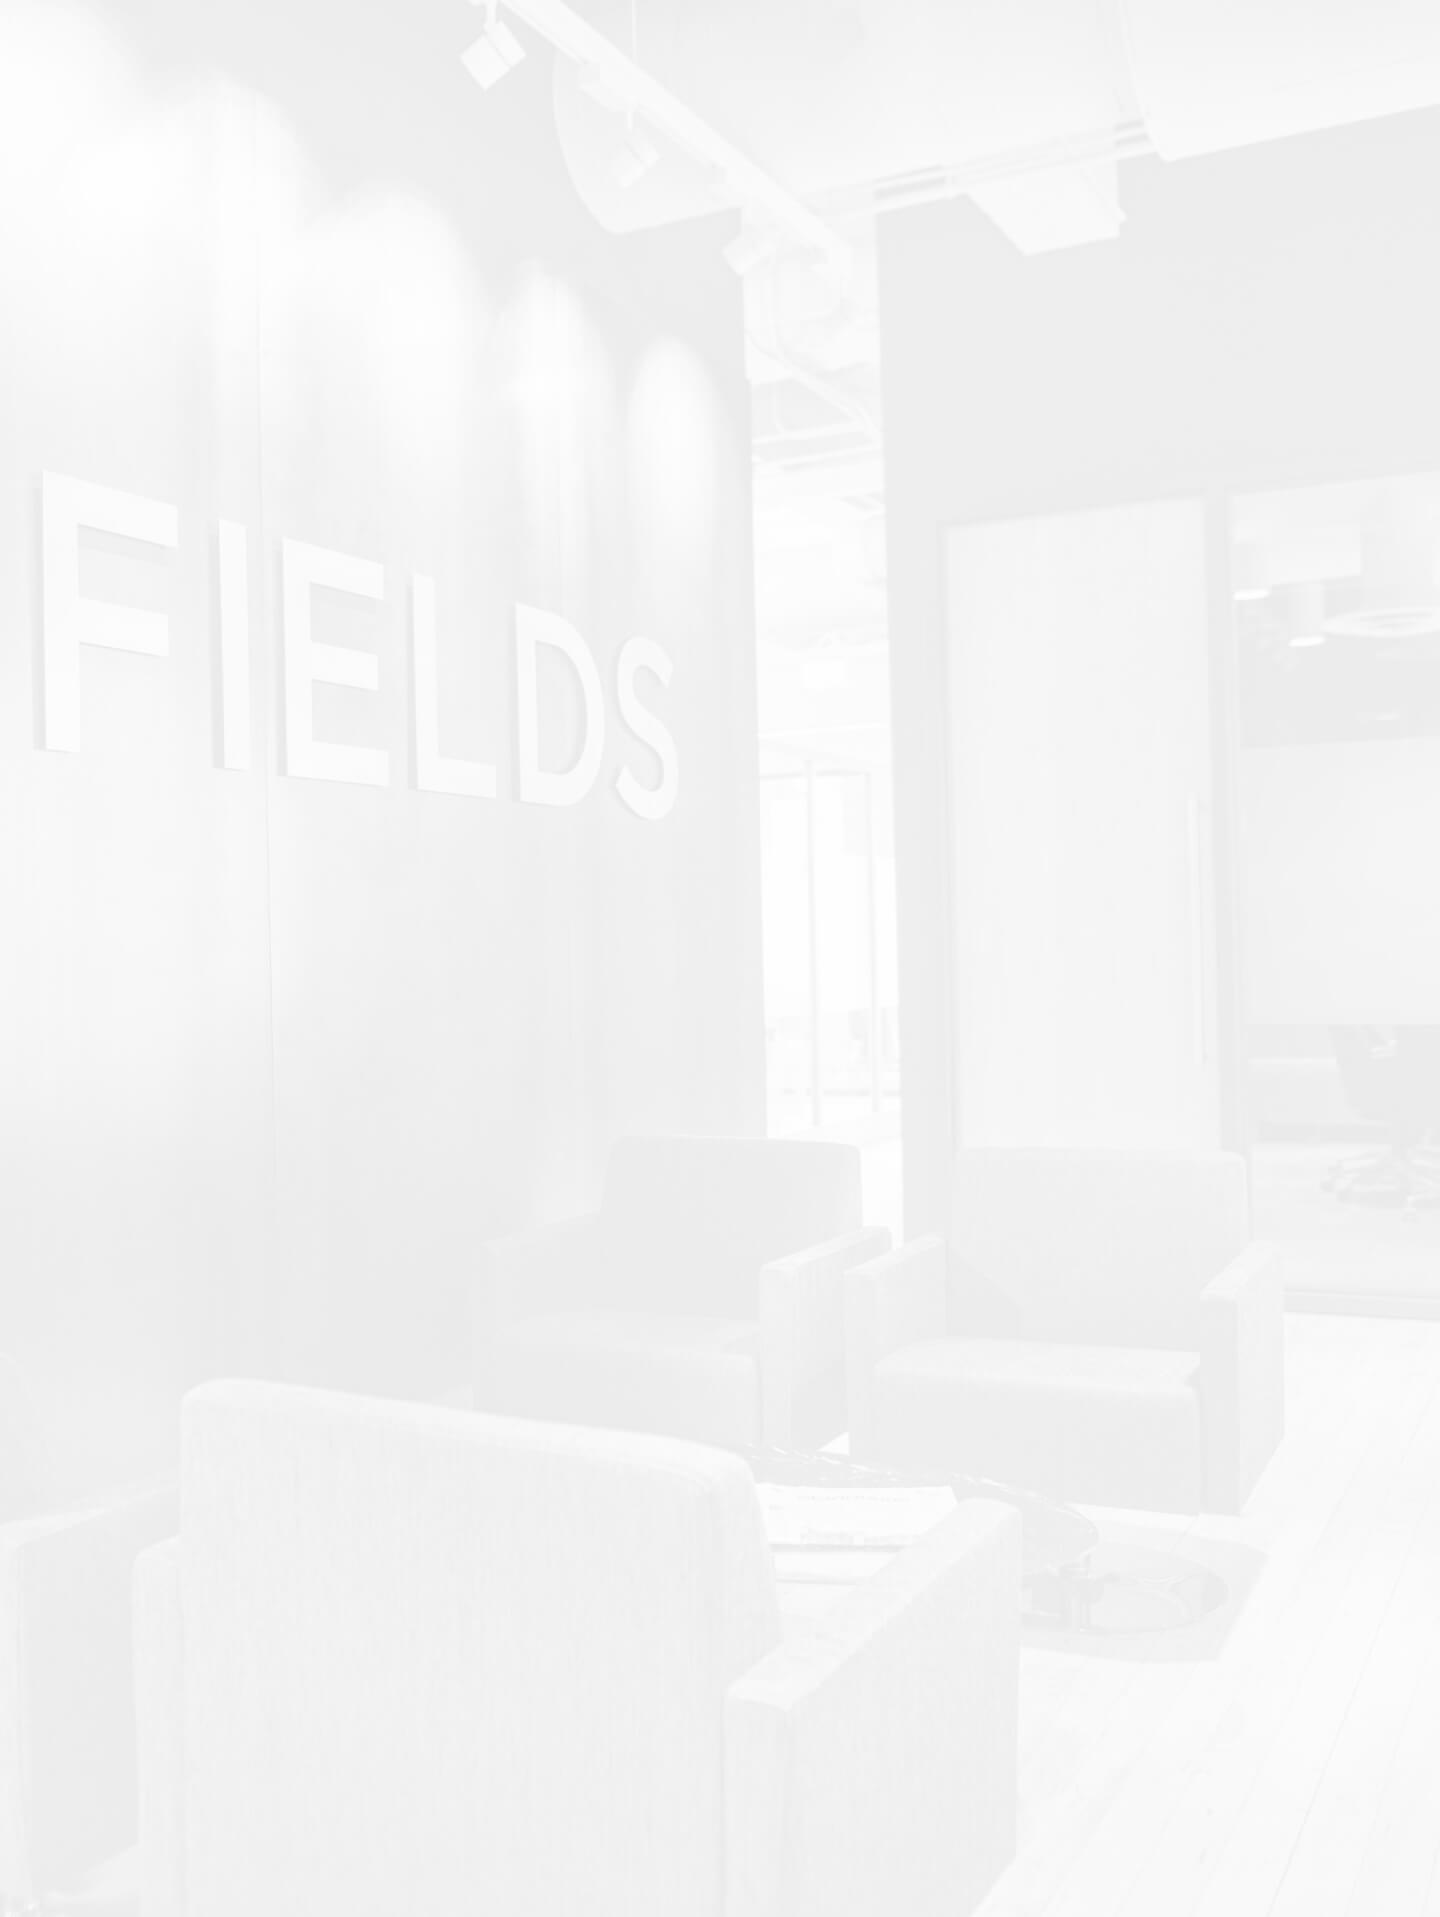 Faded Fields law office image